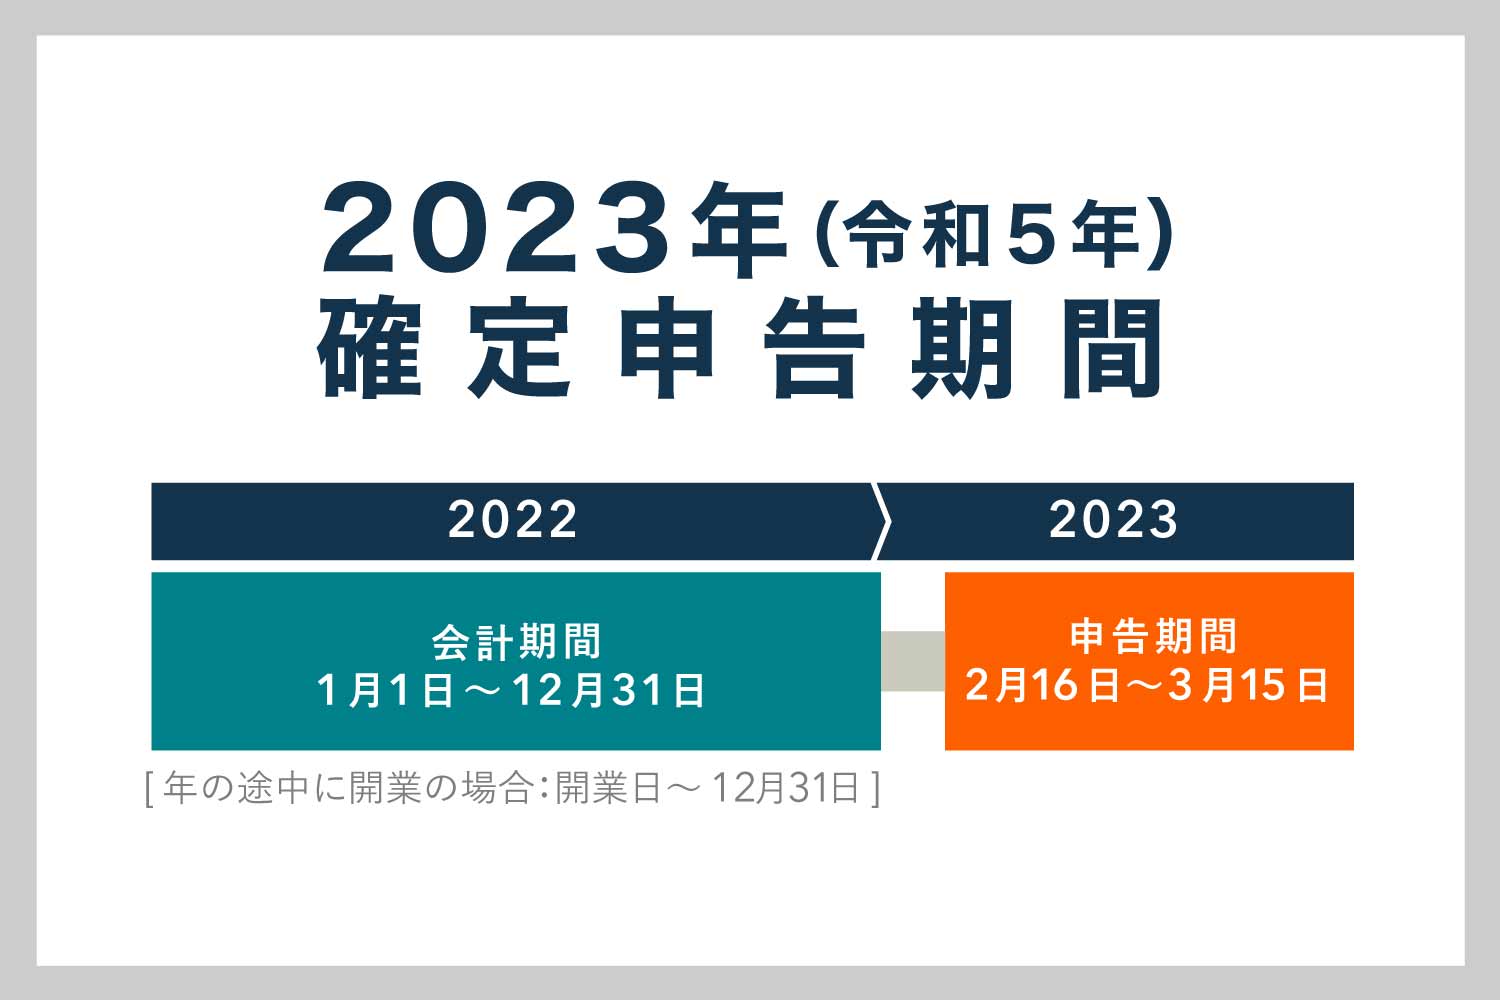 2023年(令和5年)の確定申告期間 – 2022年分の確定申告を行う時期